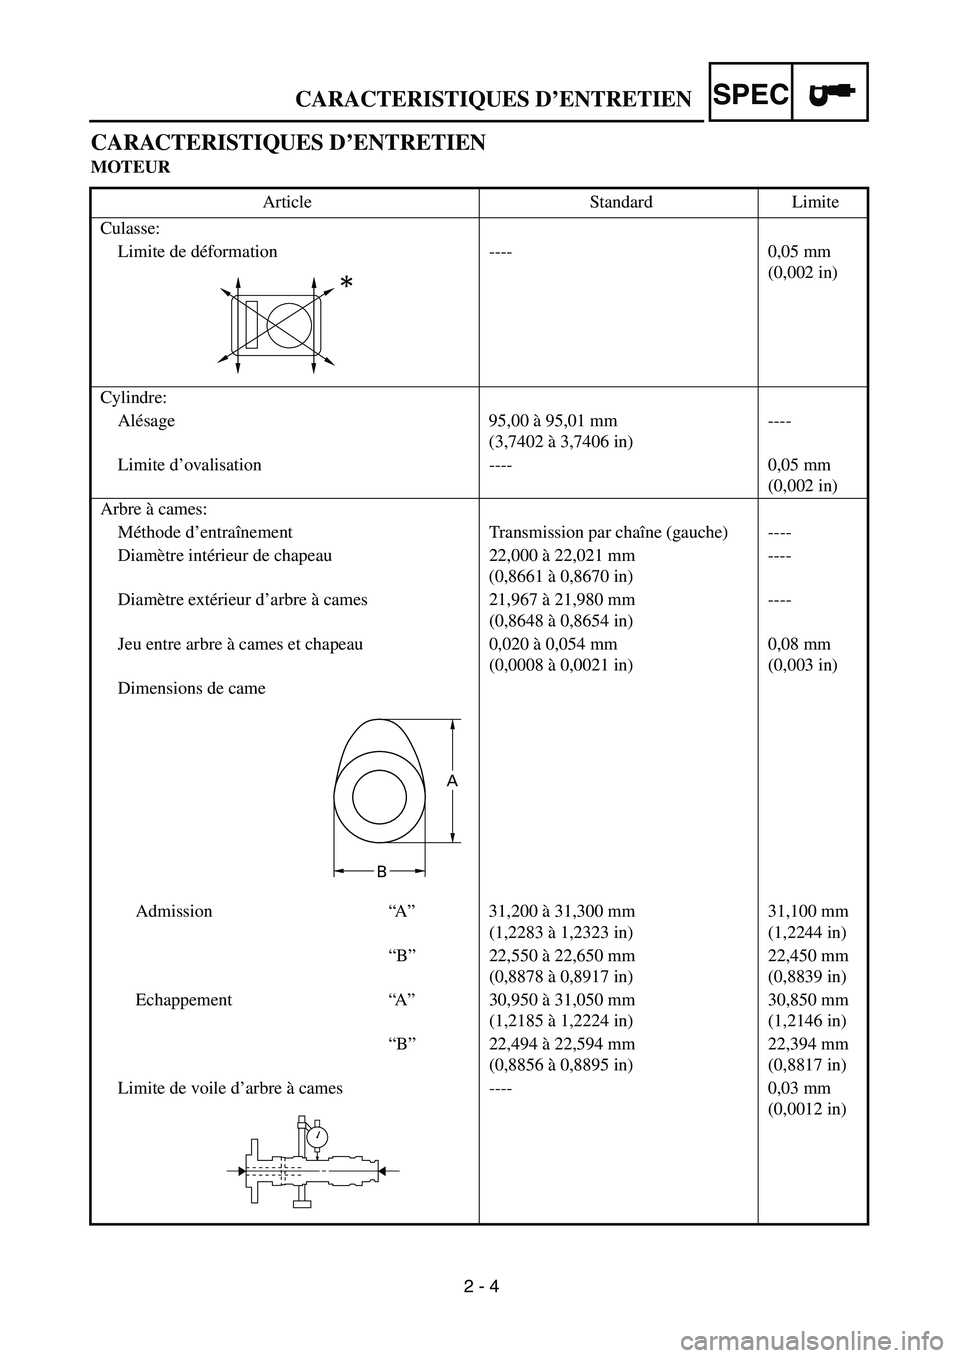 YAMAHA WR 450F 2004  Owners Manual  
2 - 4 
CARACTERISTIQUES D’ENTRETIEN
SPEC
 
CARACTERISTIQUES D’ENTRETIEN 
MOTEUR 
Article Standard Limite
Culasse:
Limite de déformation ---- 0,05 mm 
(0,002 in)
Cylindre:
Alésage 95,00 à 95,0